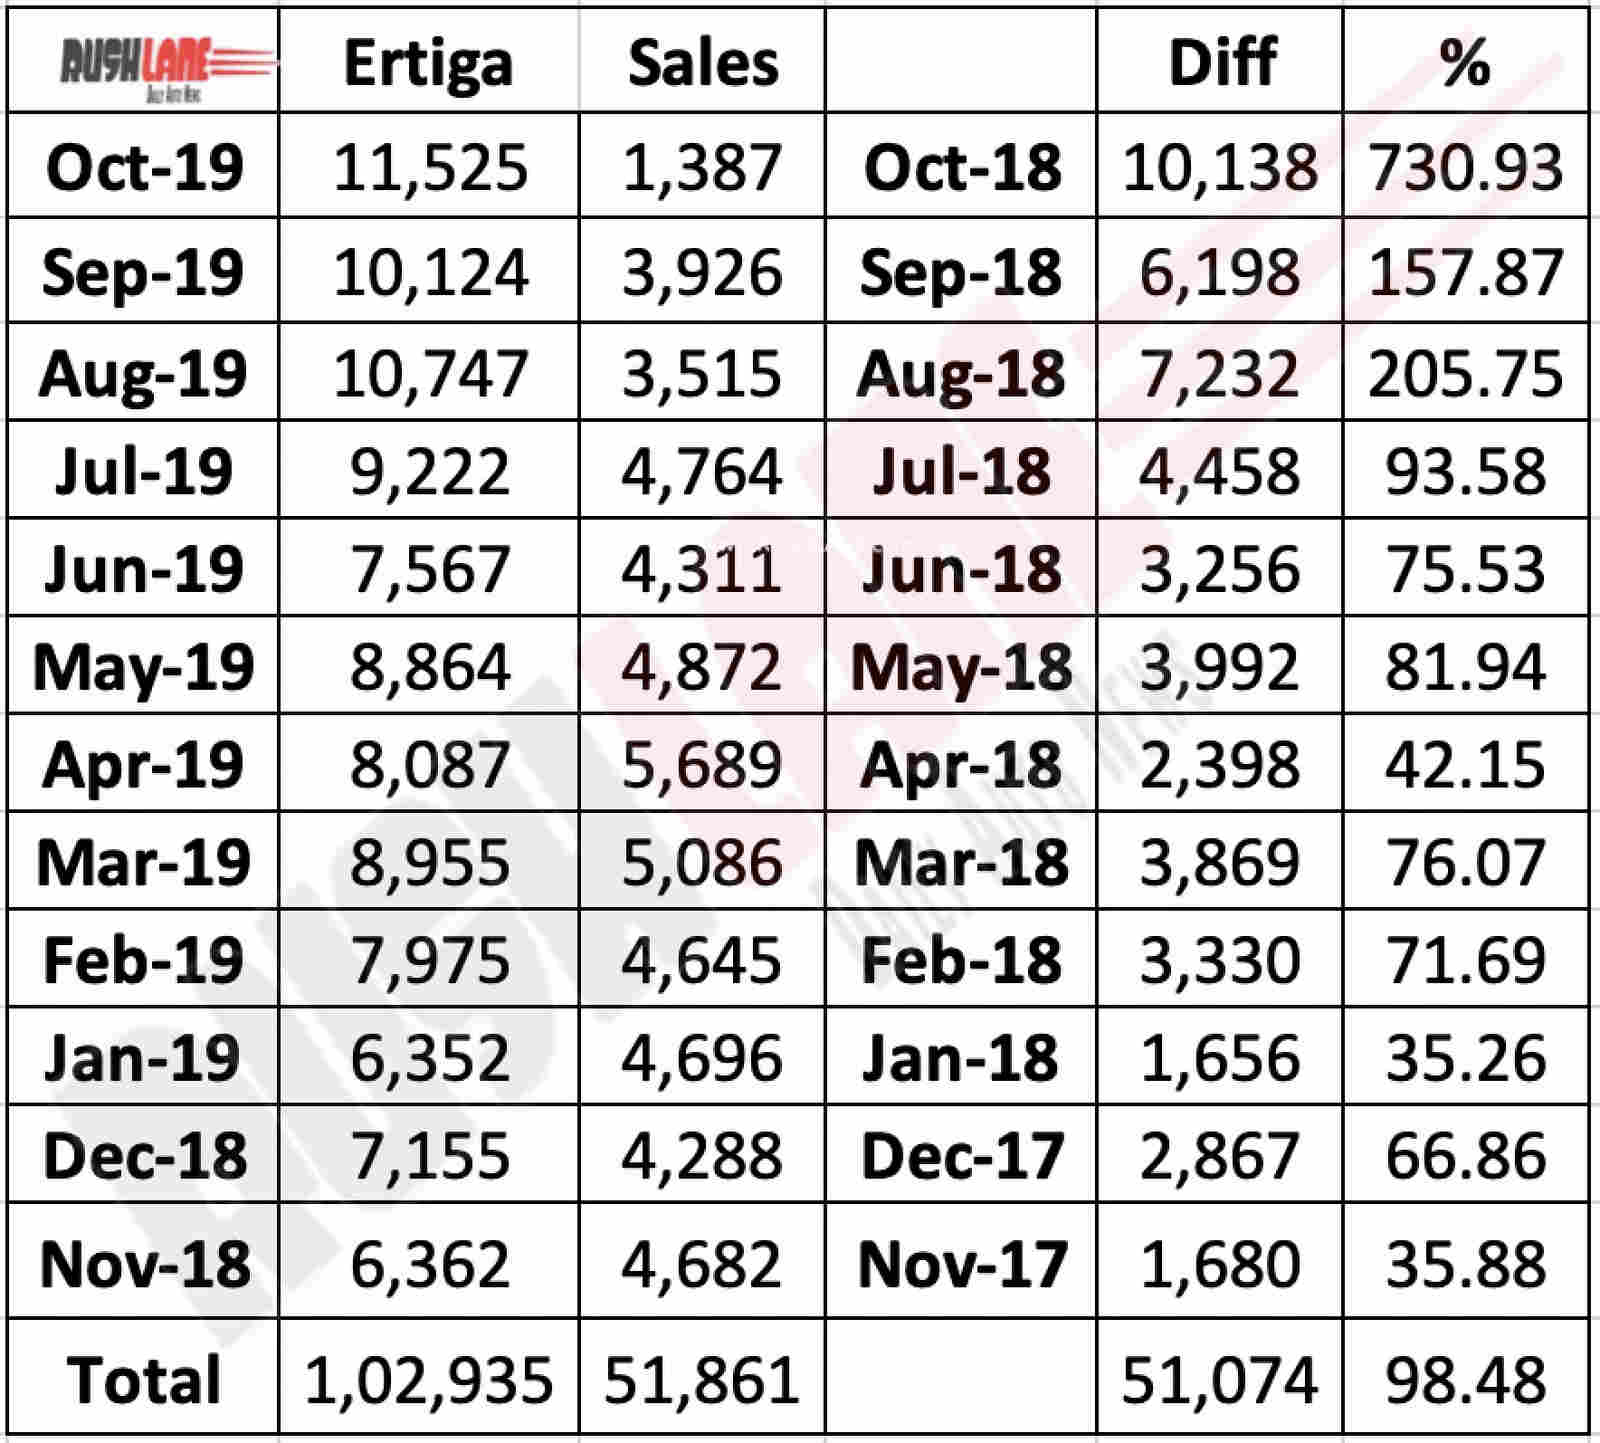 Maruti Ertiga sales performance last 1 year